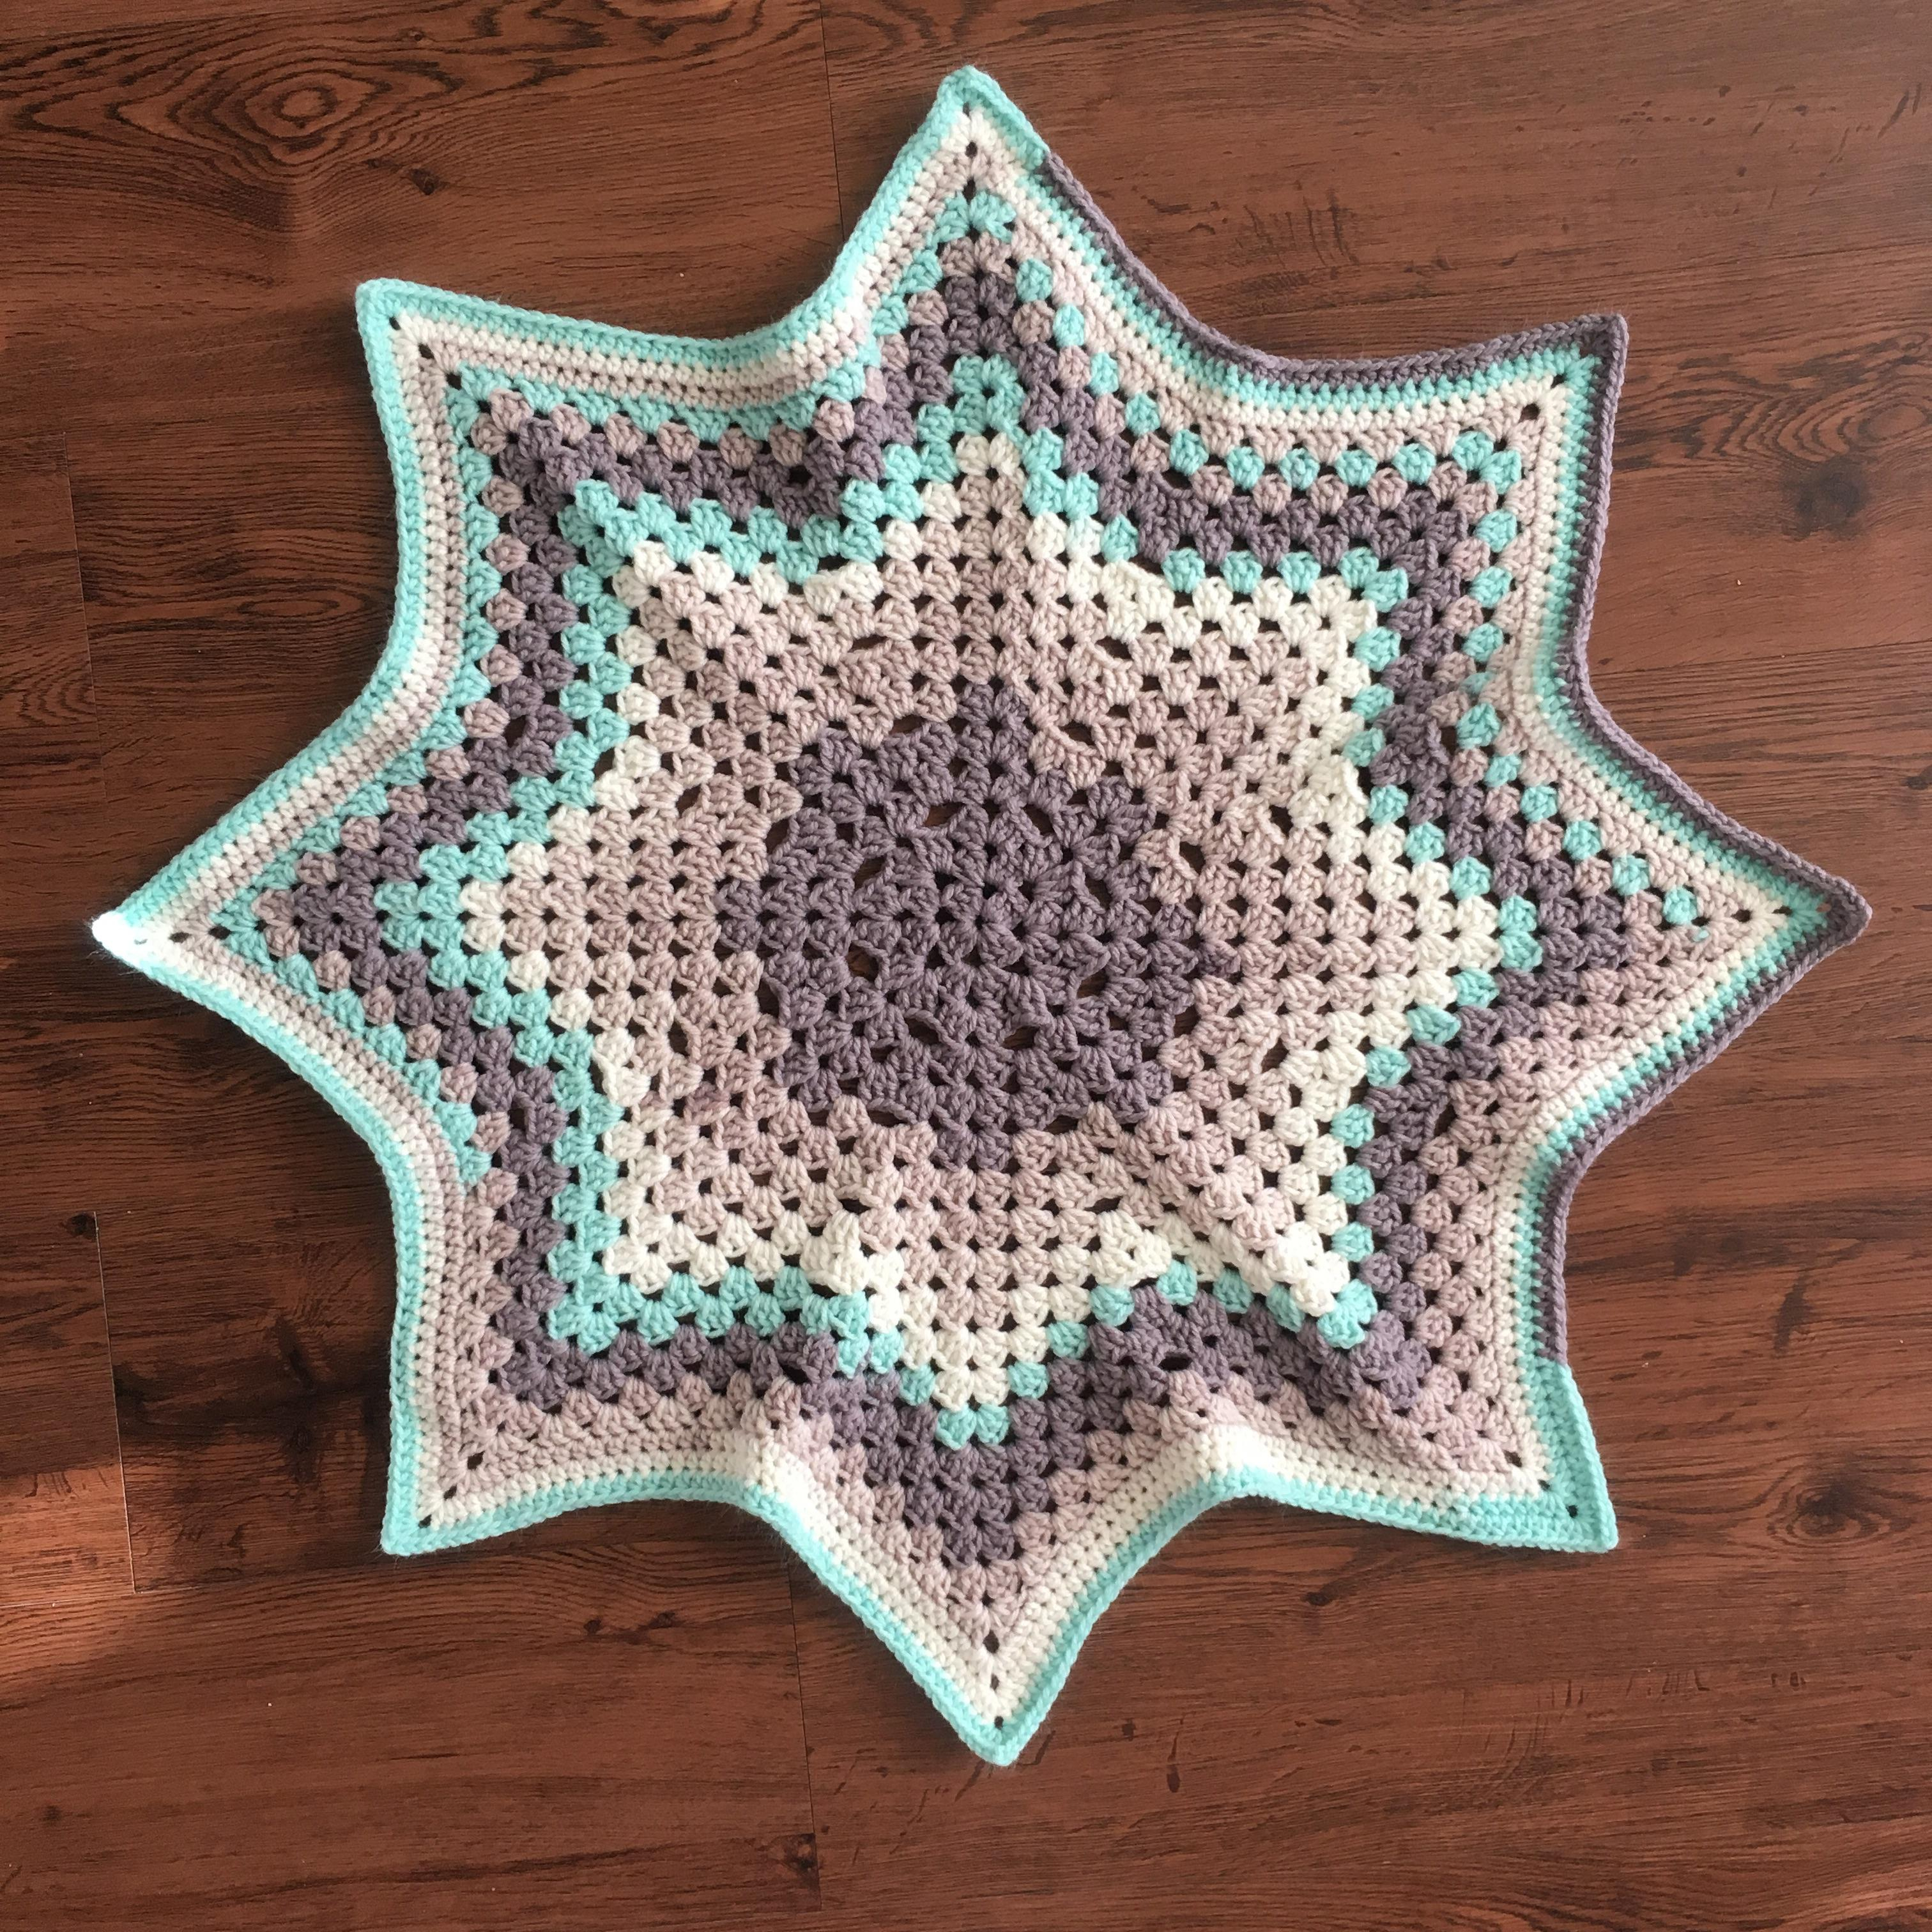 Star Baby Blanket Crochet Pattern Finished Object A Granny Star Ba Blanket In Dreamy Mint Caron